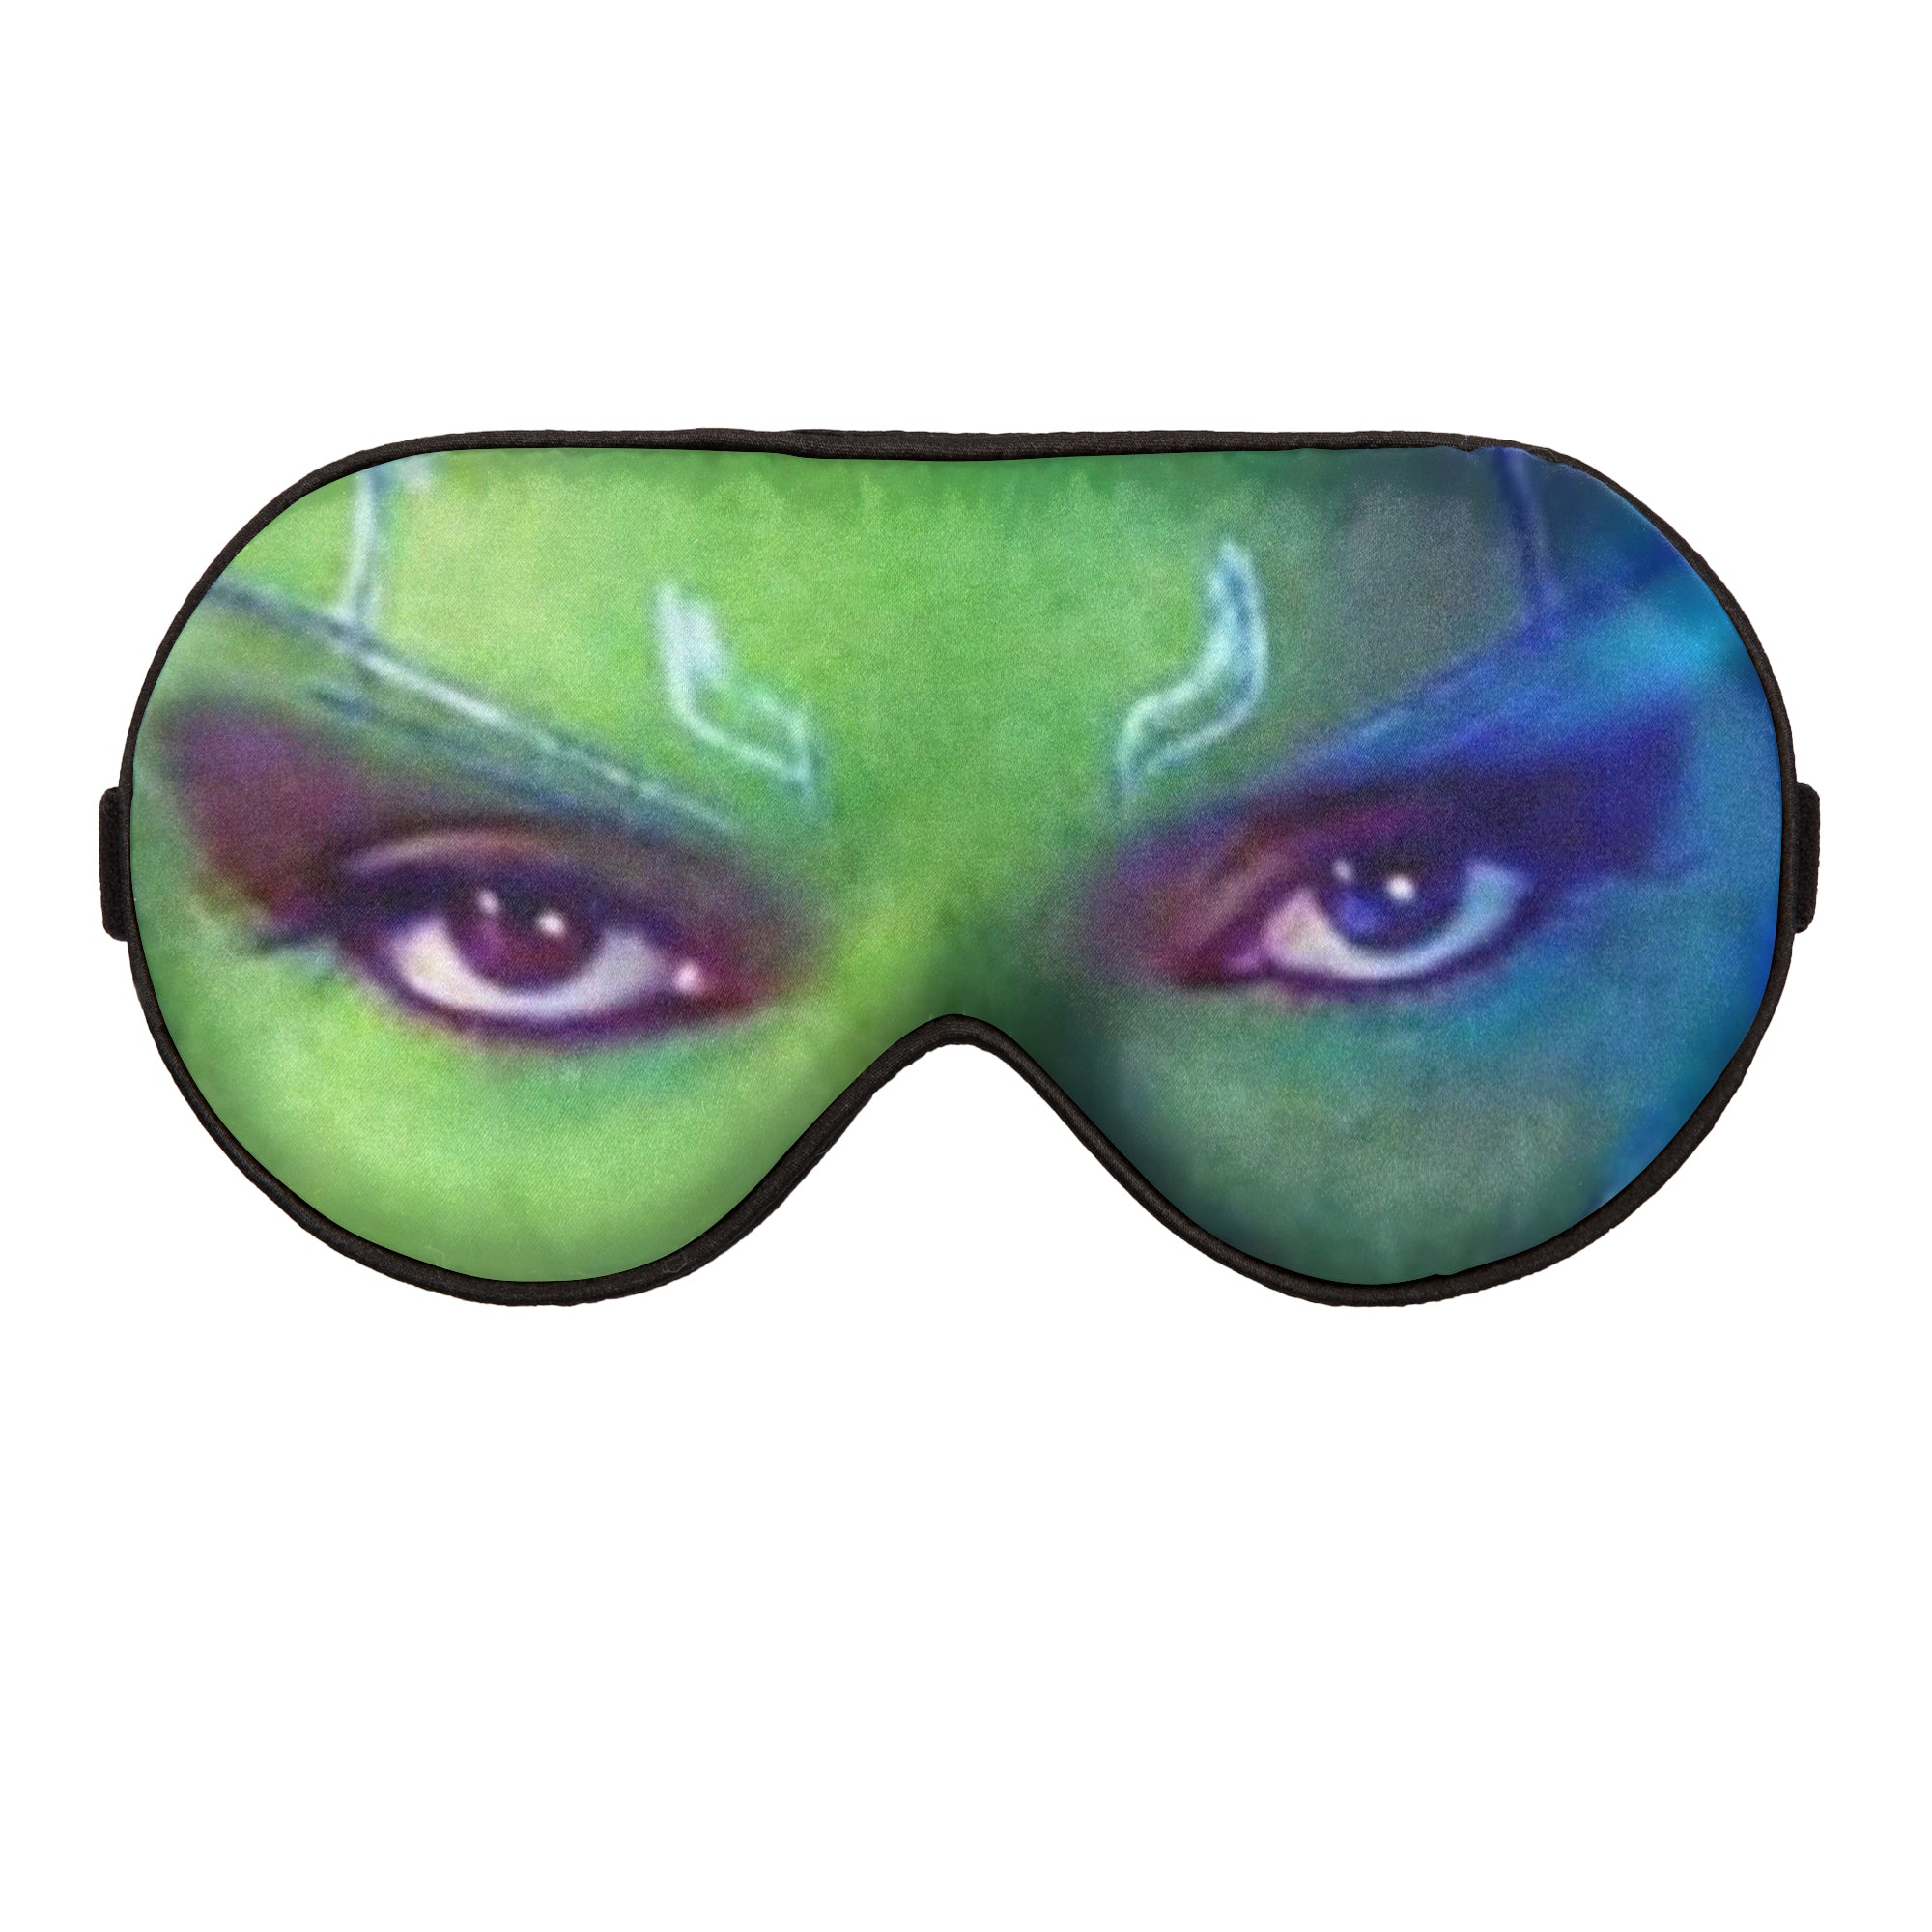 Gamora from Guardians of the Galaxy Custom Sleep Mask